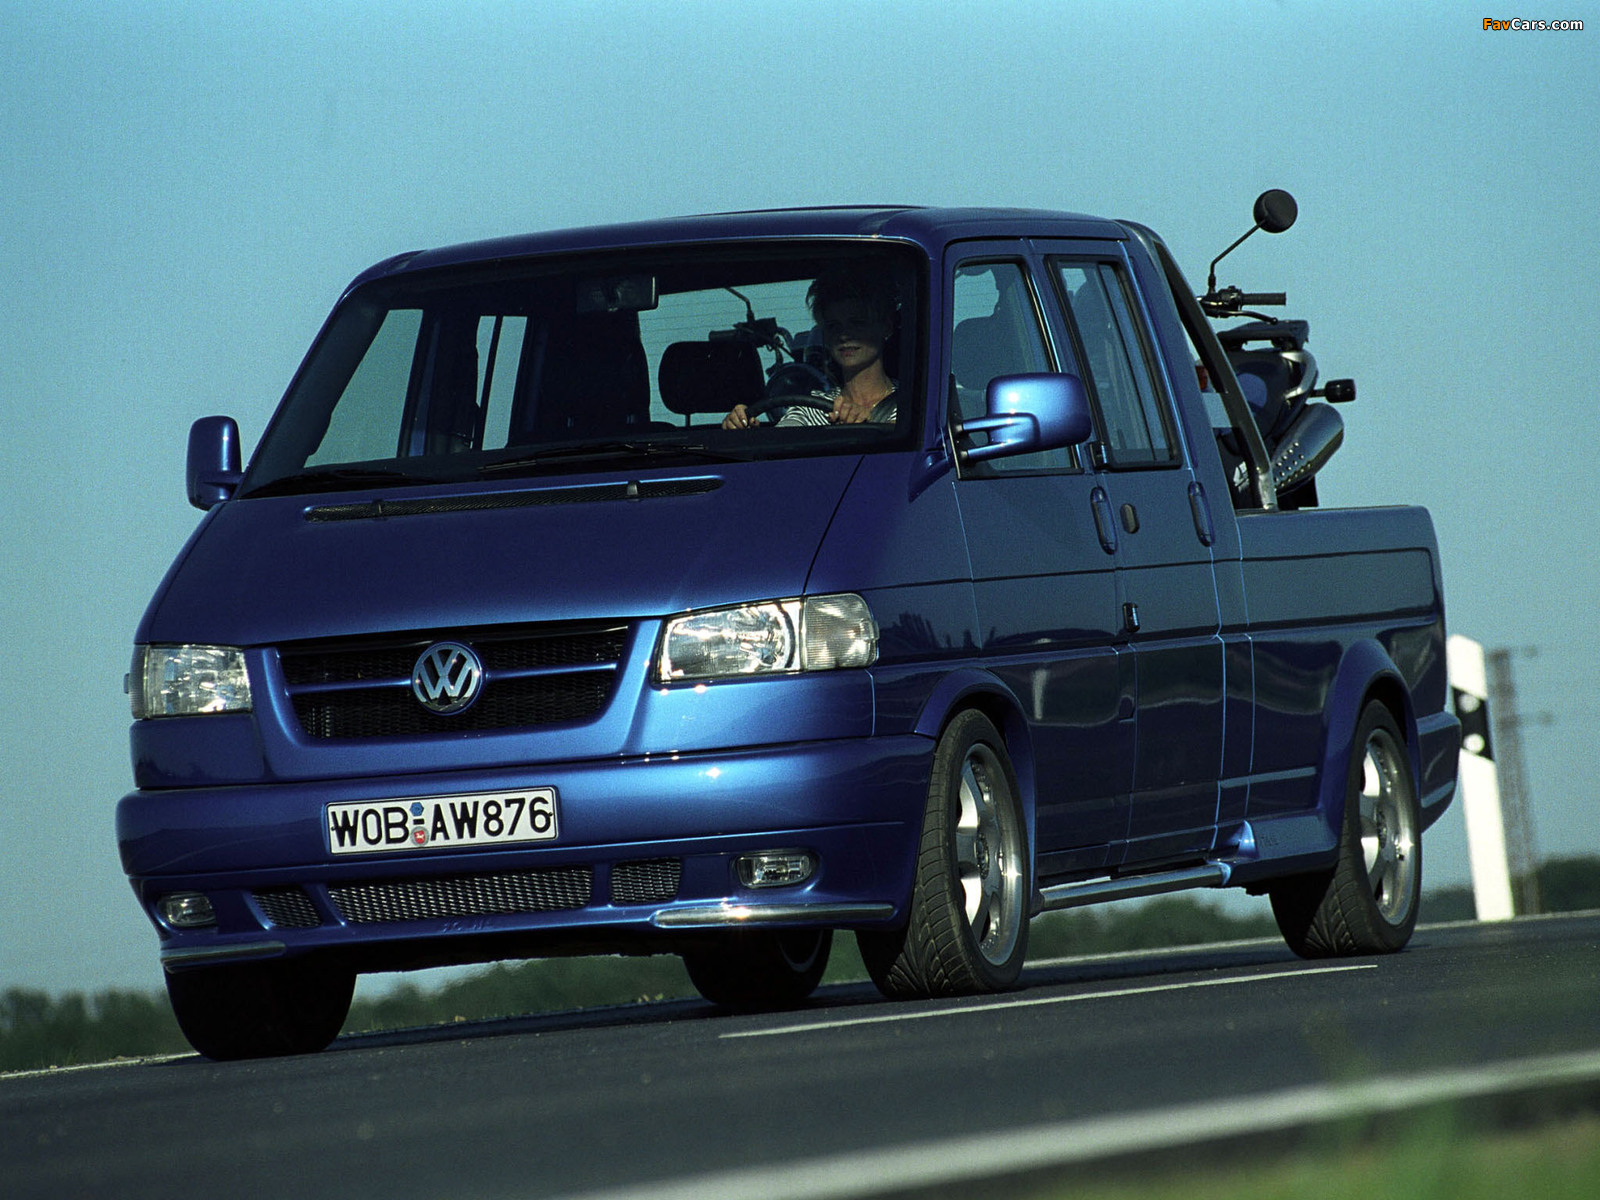 Images of Volkswagen T4 (1600 x 1200)